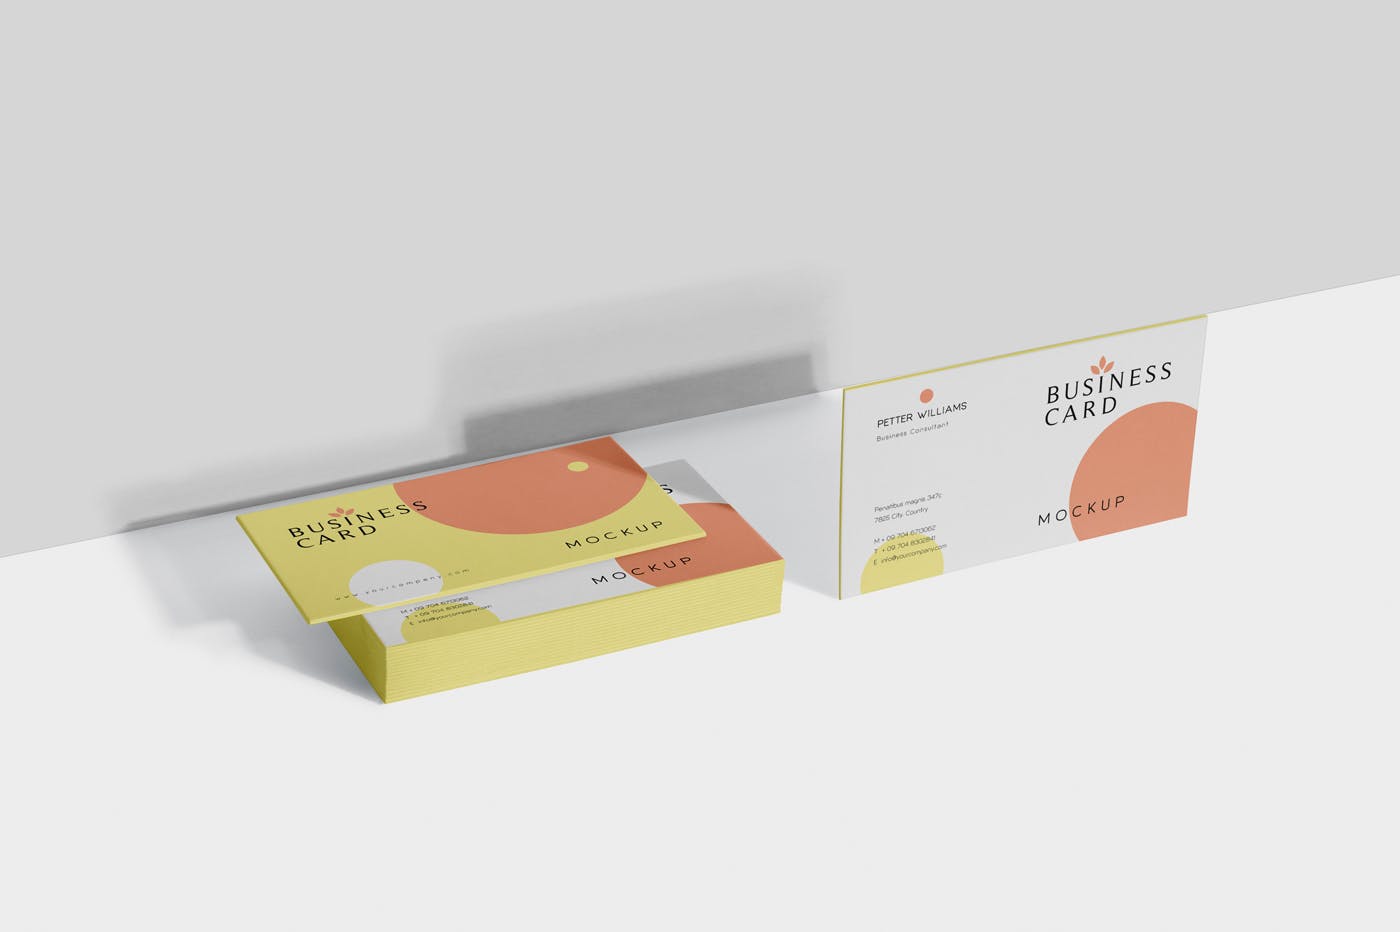 创意企业名片设计阴影效果图第一素材精选 Business Card Mock-Ups插图(4)